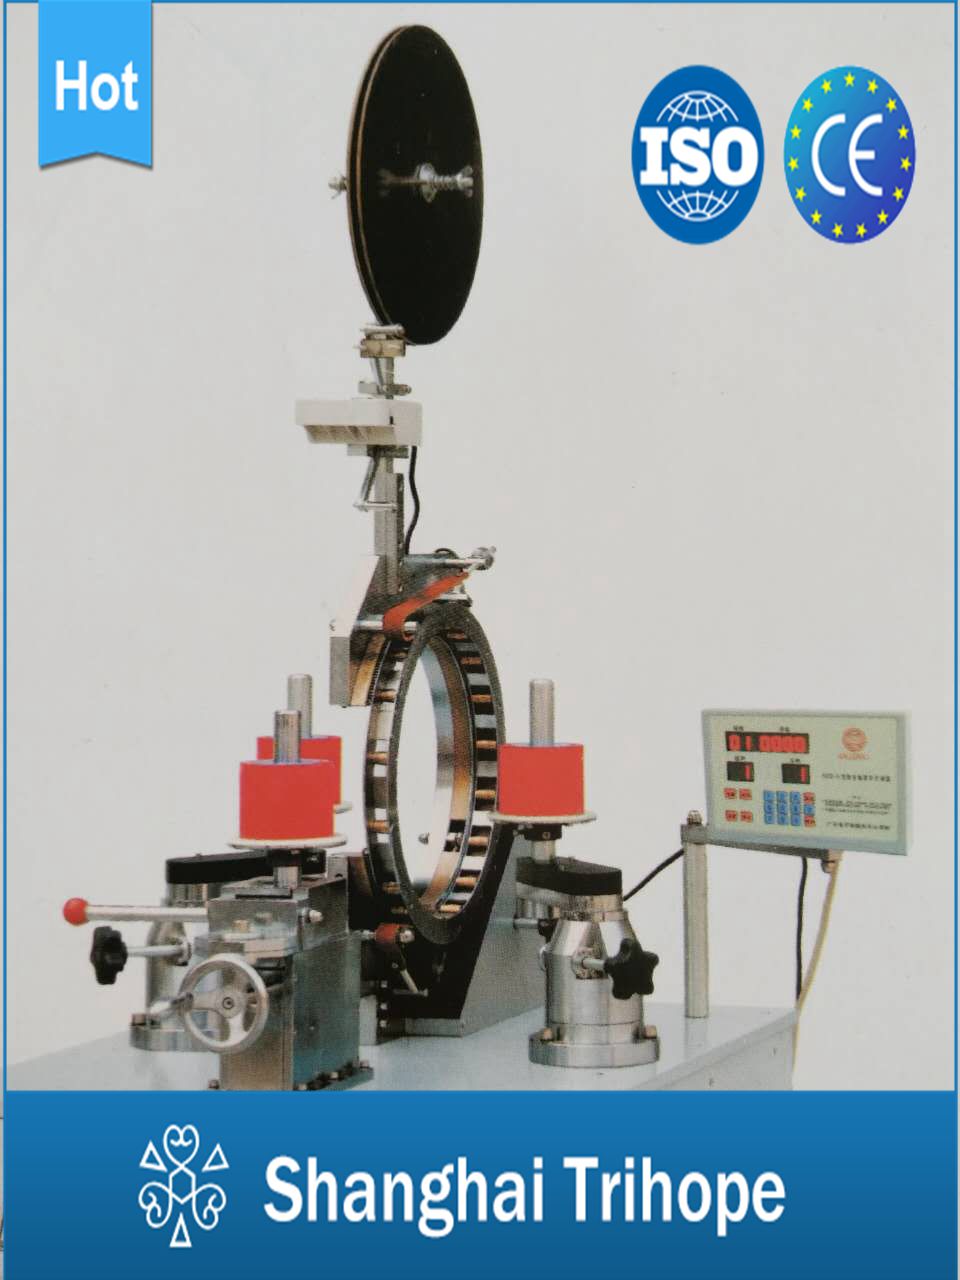 Profesjonell Kina laserskjæremaskin - Automatisk isolasjonstapemaskin - Trihope